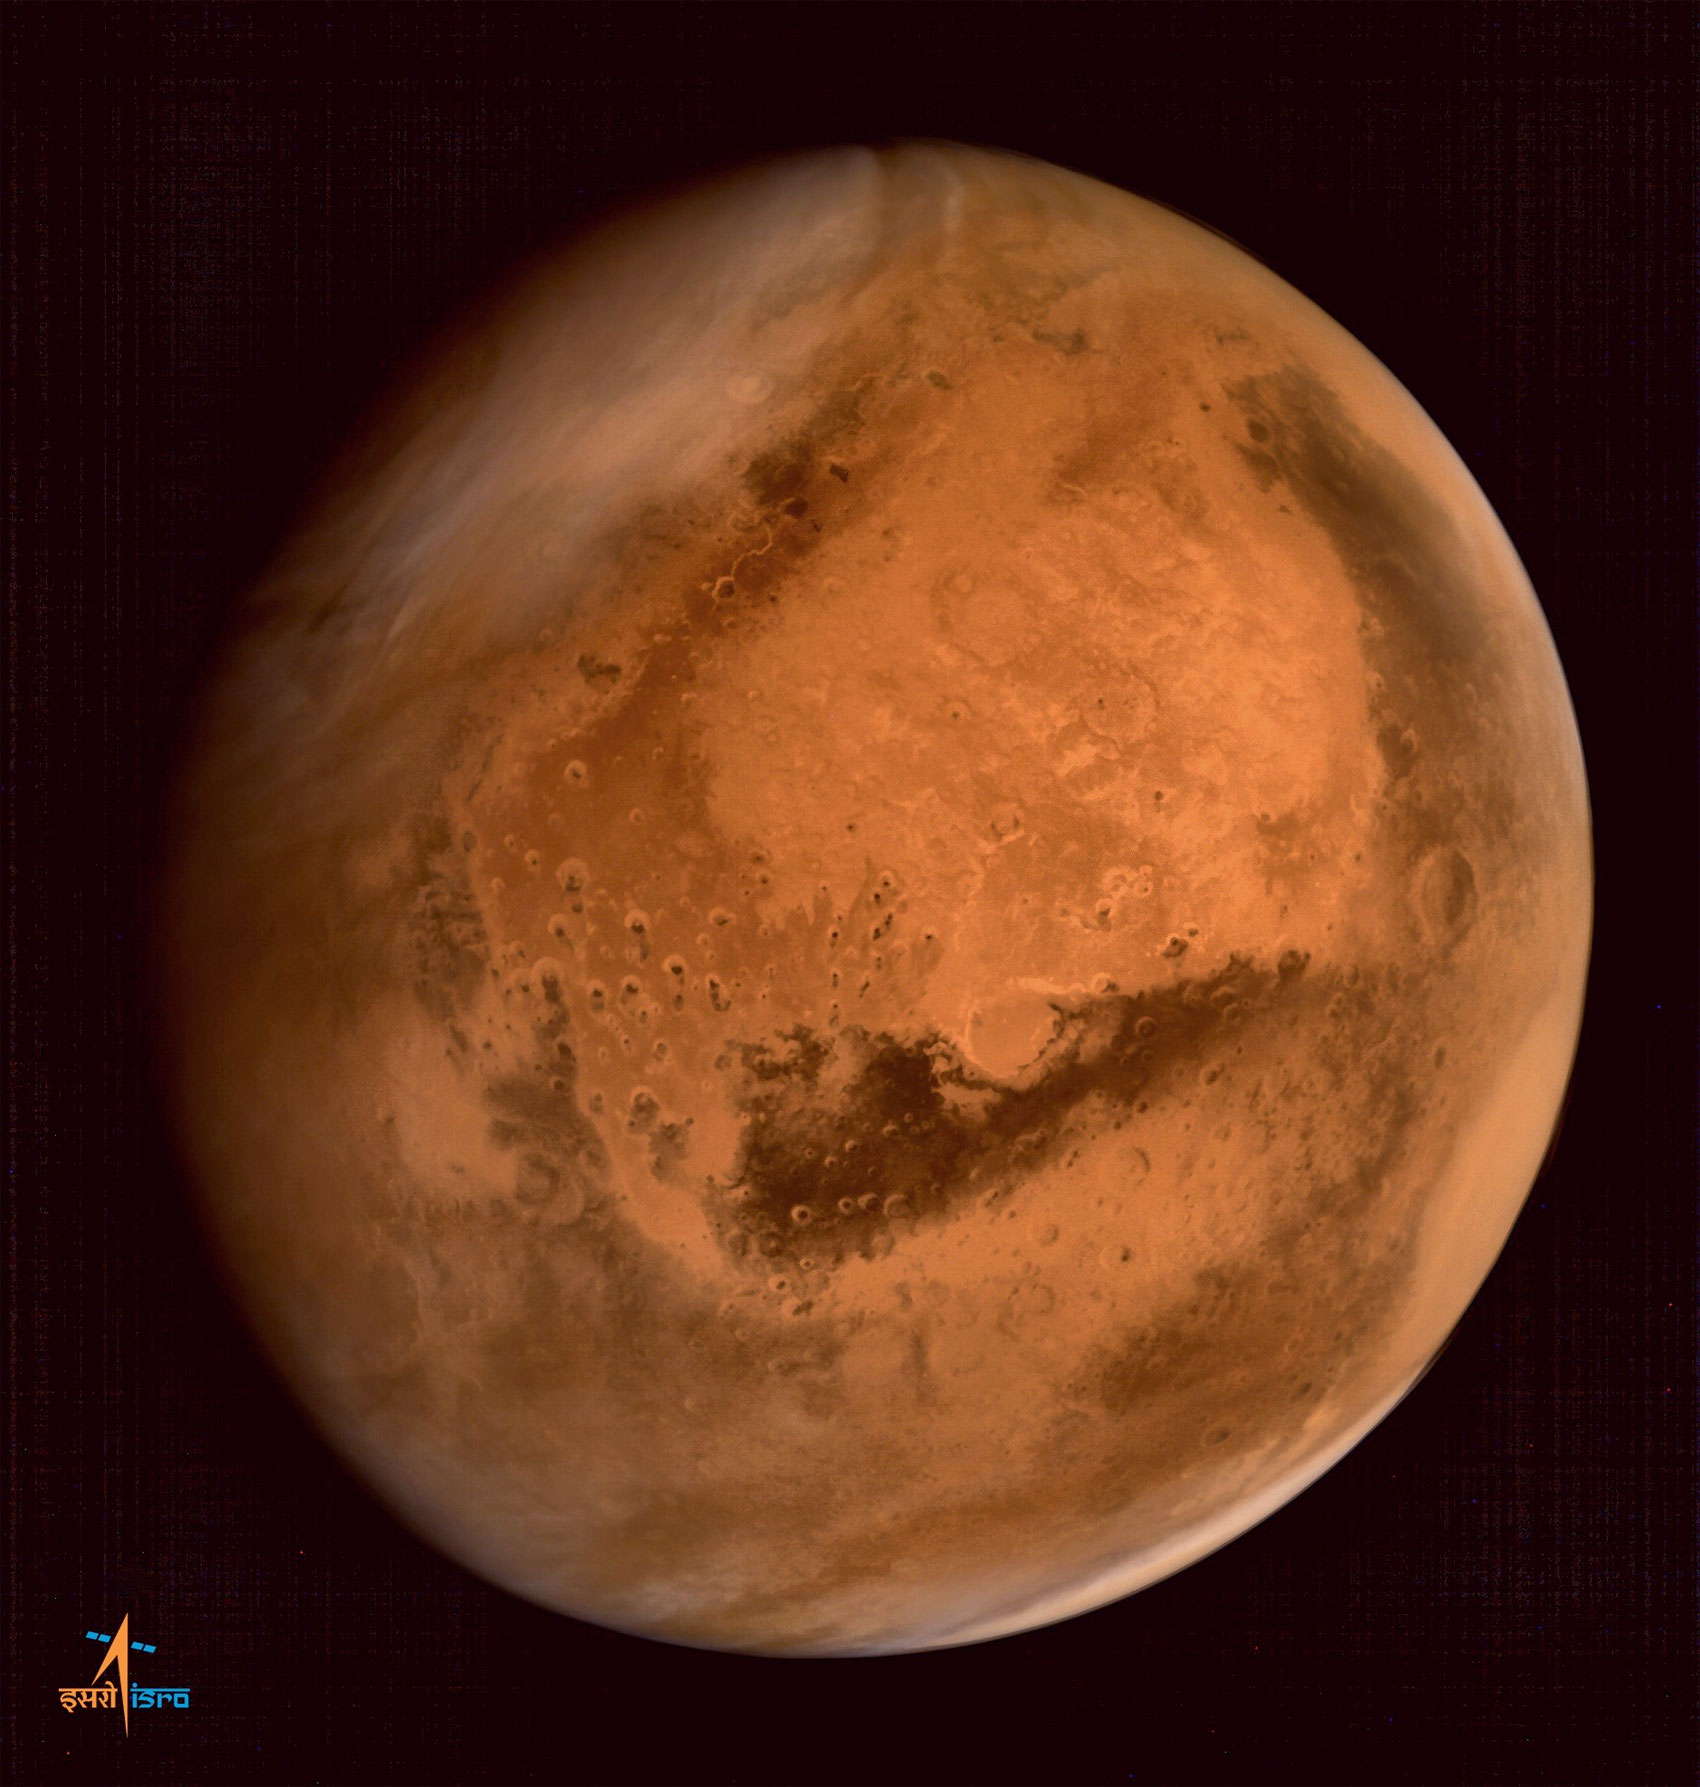 La planète Mars vue par la sonde MOM de l'agence spatiale indienne. © Isro